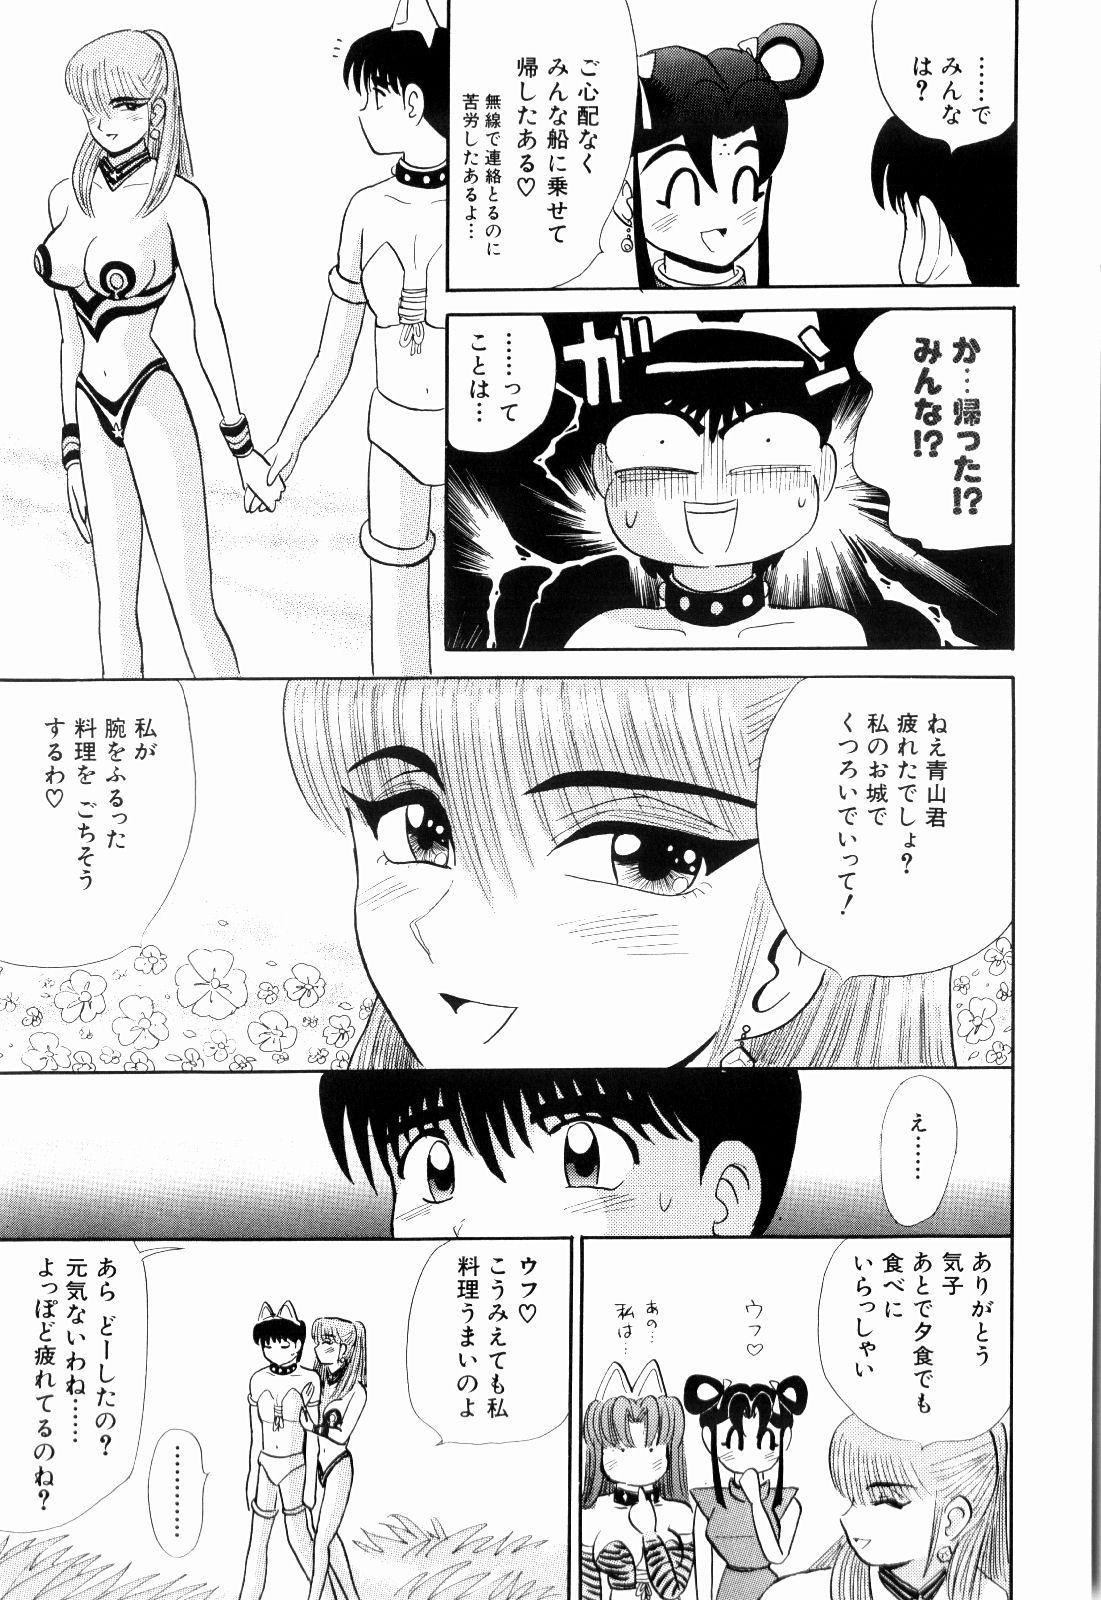 Online Kenjiro Kakimoto - Futari Kurashi 11 Twistys - Page 125